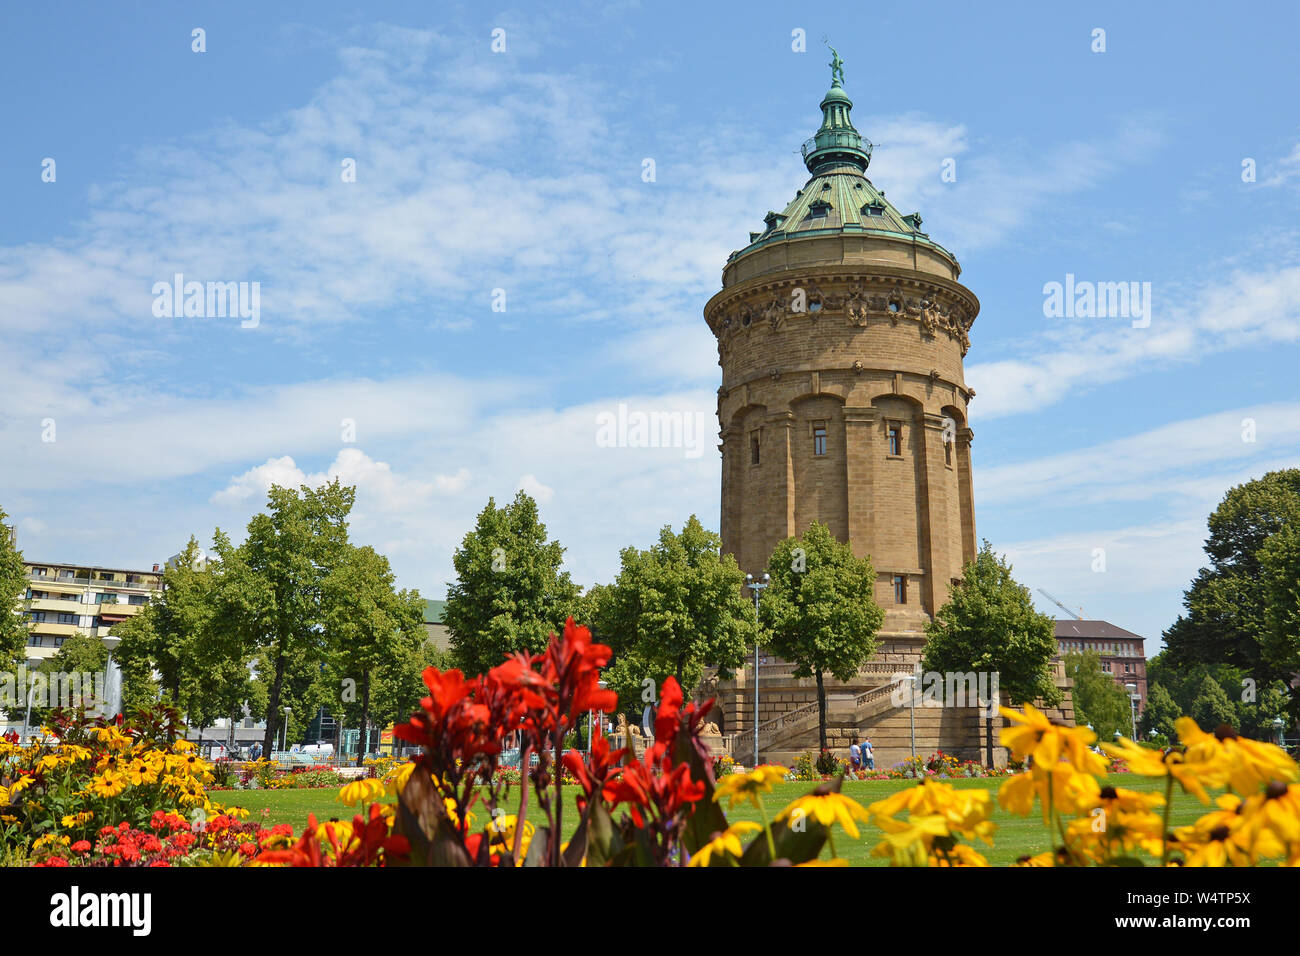 Wasser Tour namens "Wasserturm", Wahrzeichen der Stadt Mannheim in kleinen öffentlichen Park mit bunten Blumen im Sommer Tag Stockfoto